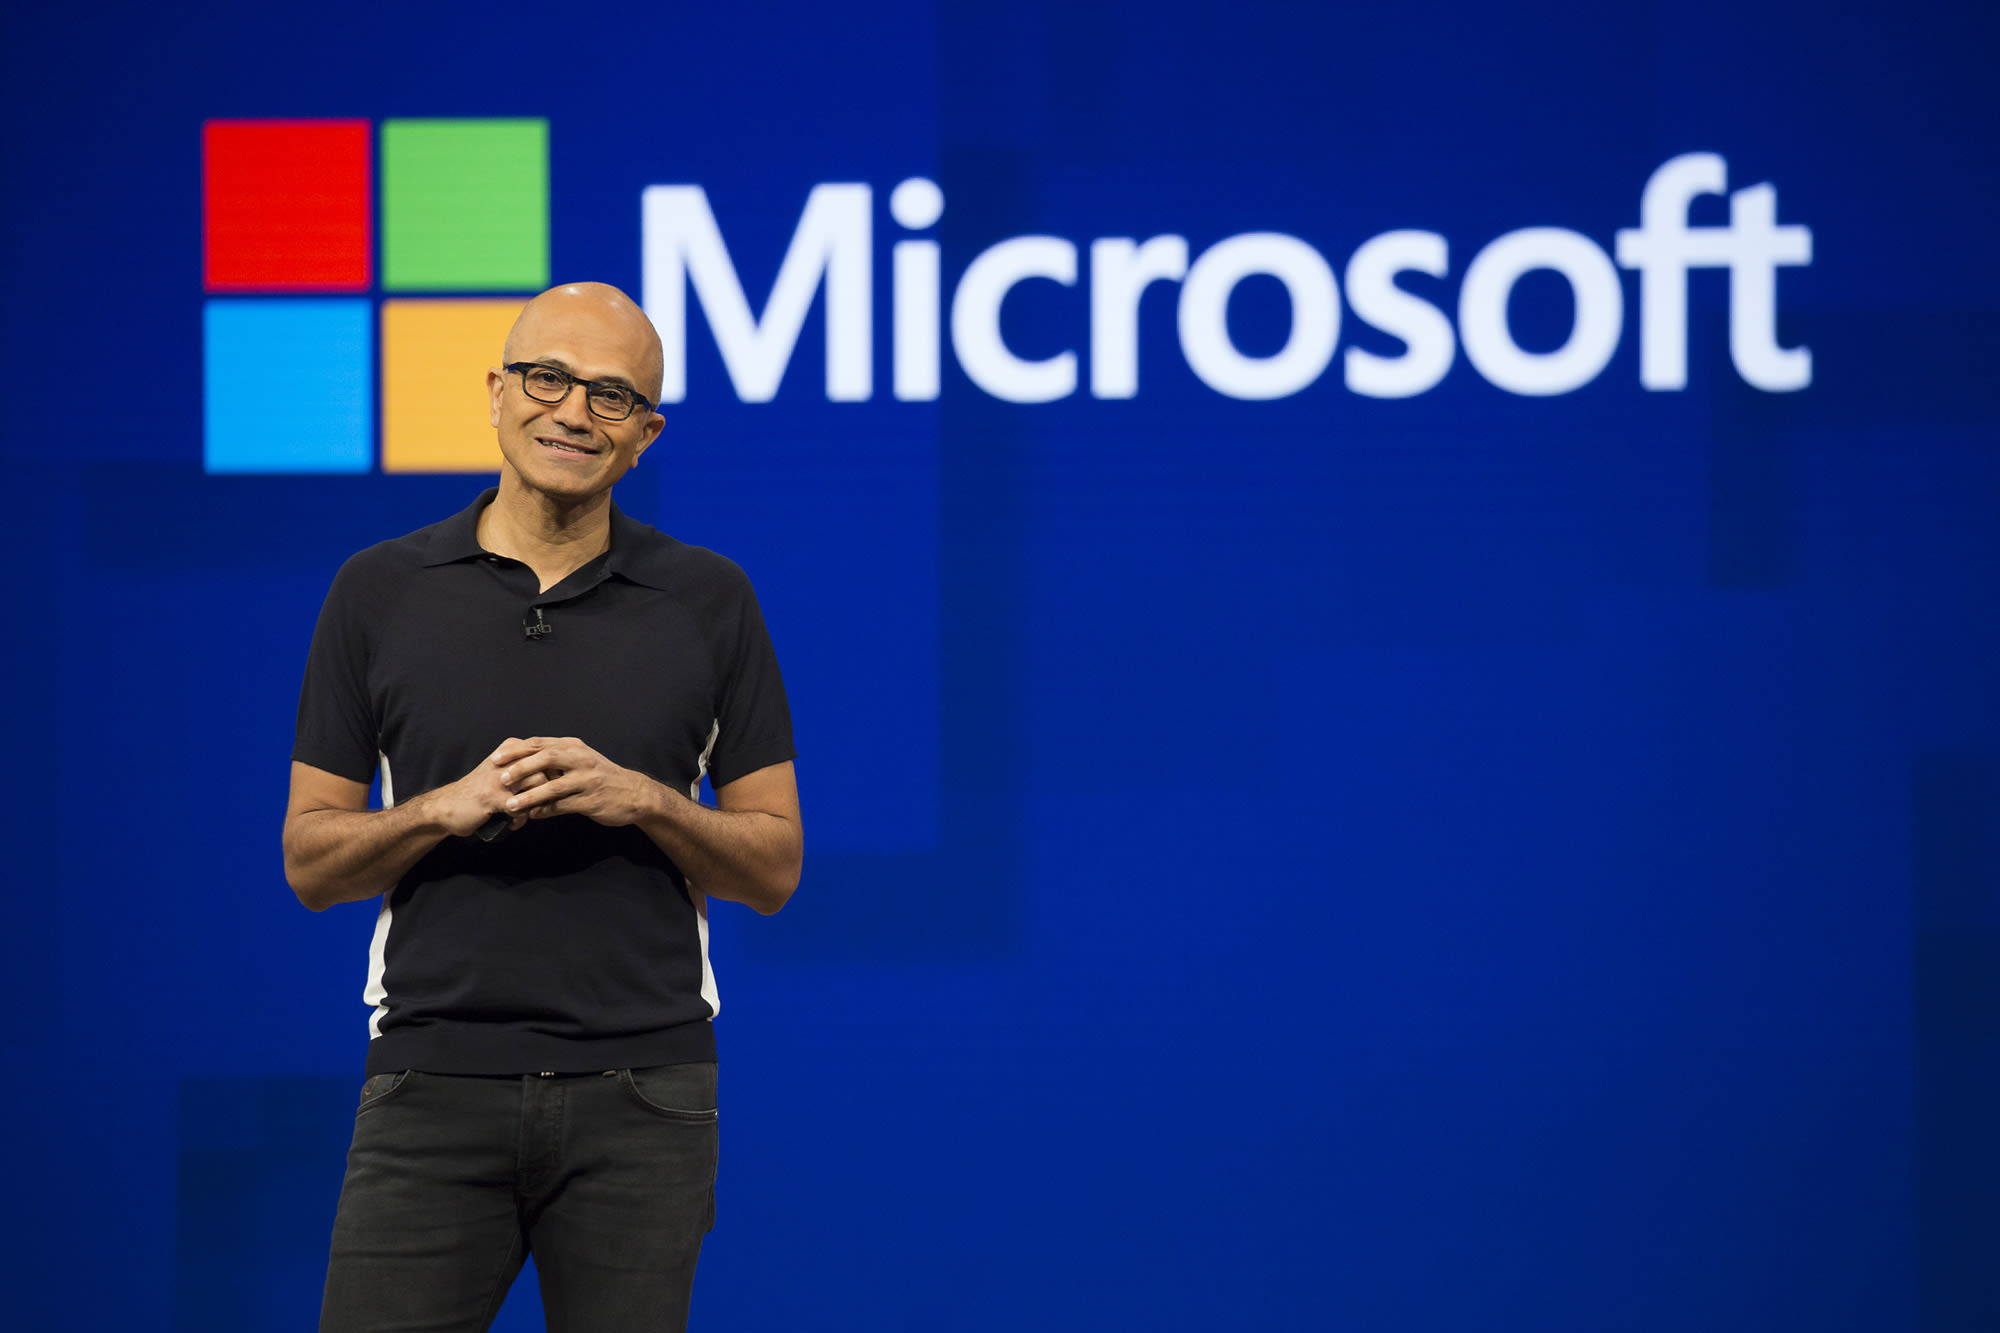 Microsoft chief executive officer, Satya Nadella